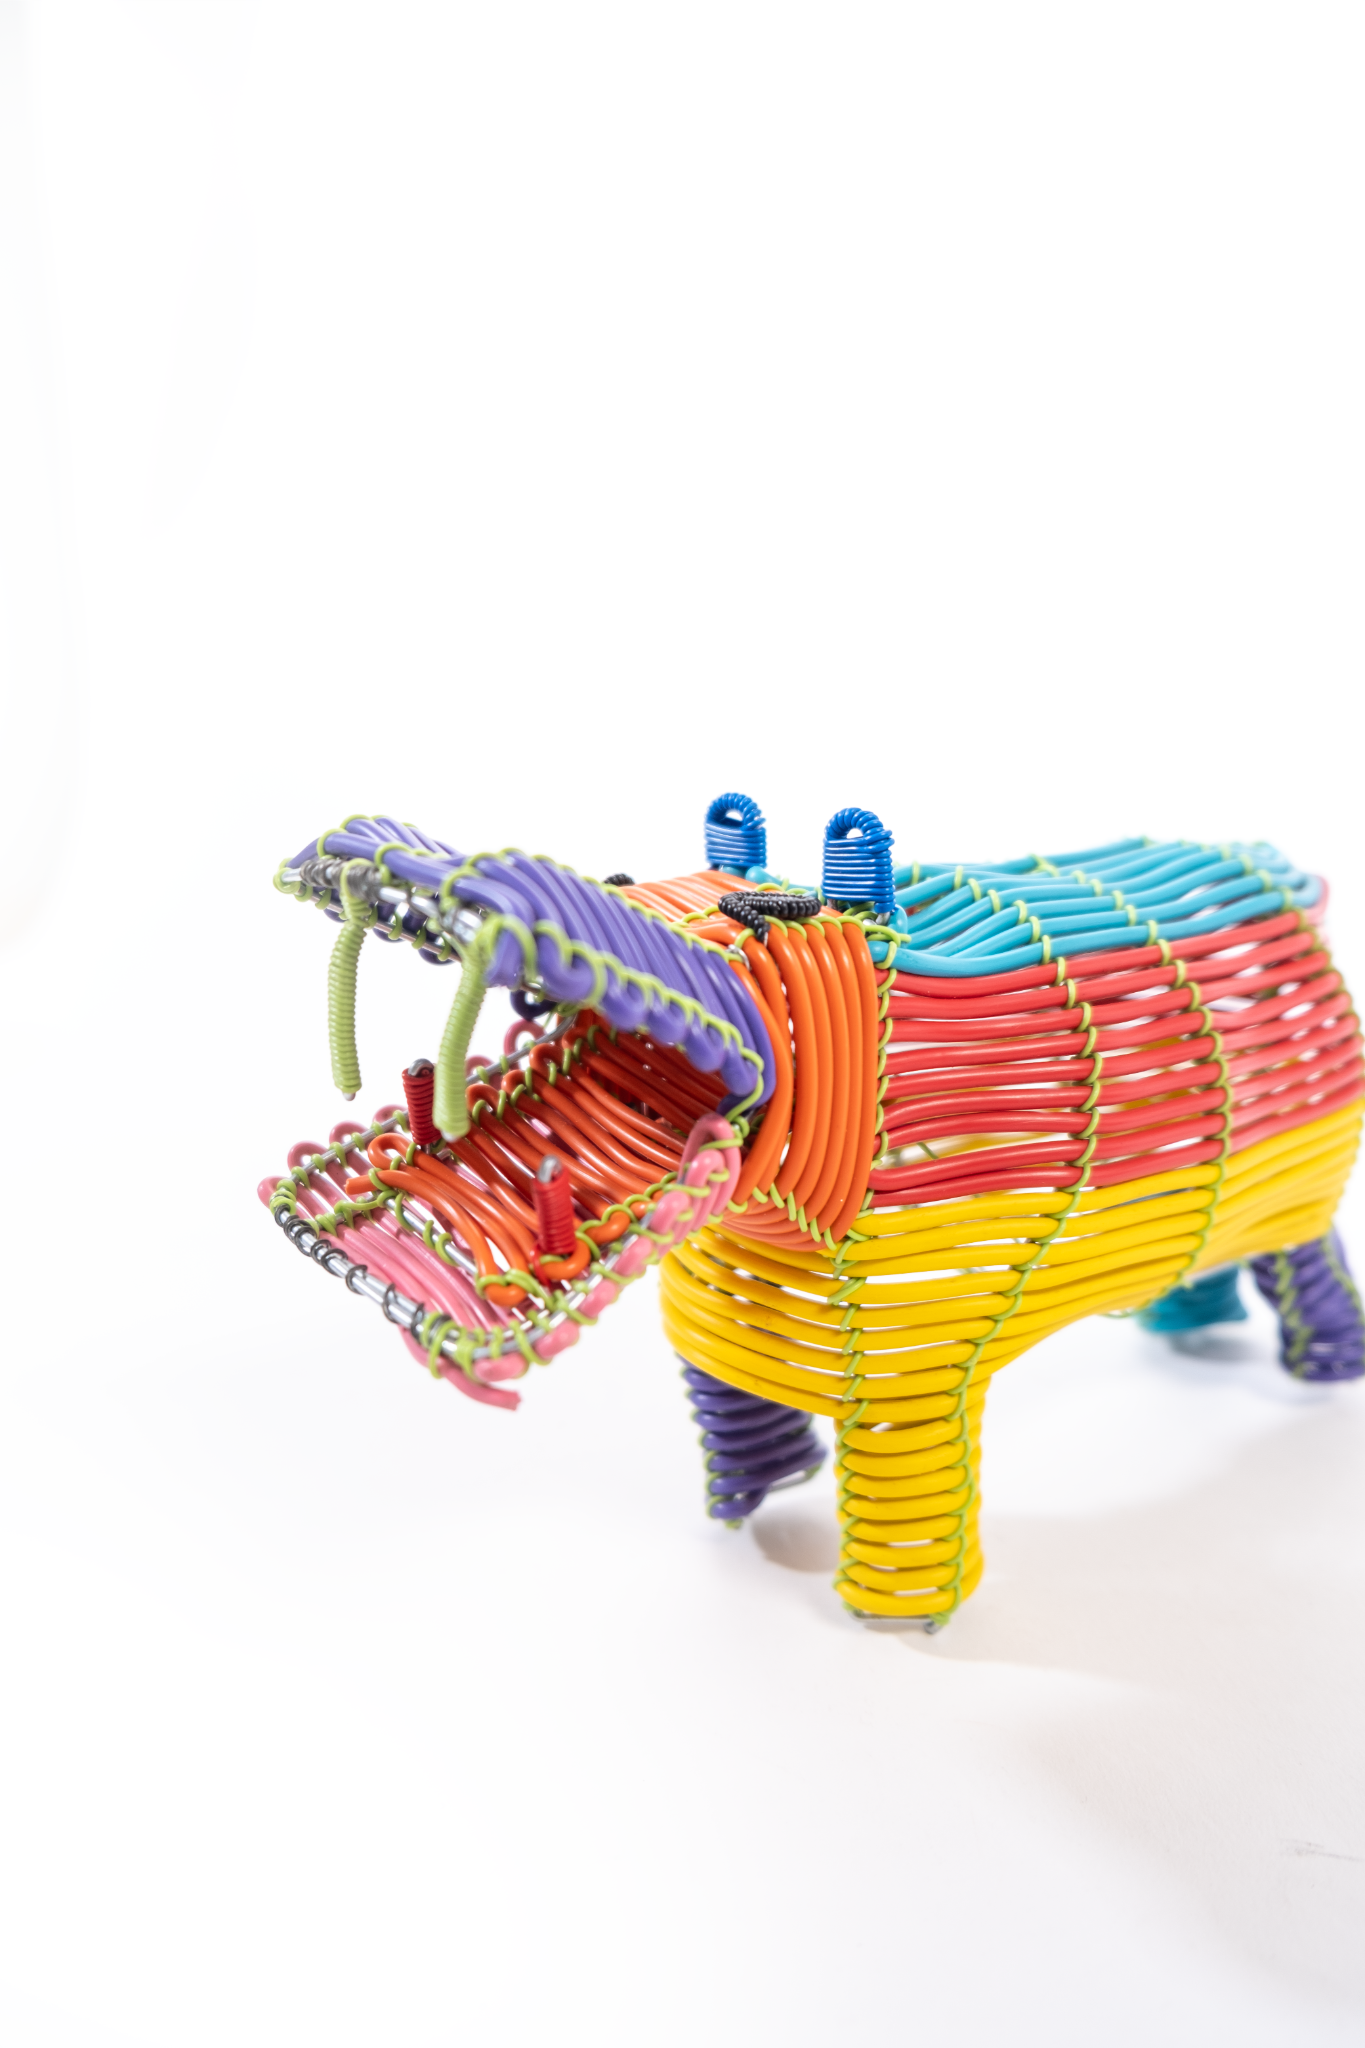 Colorful Wire Hippo